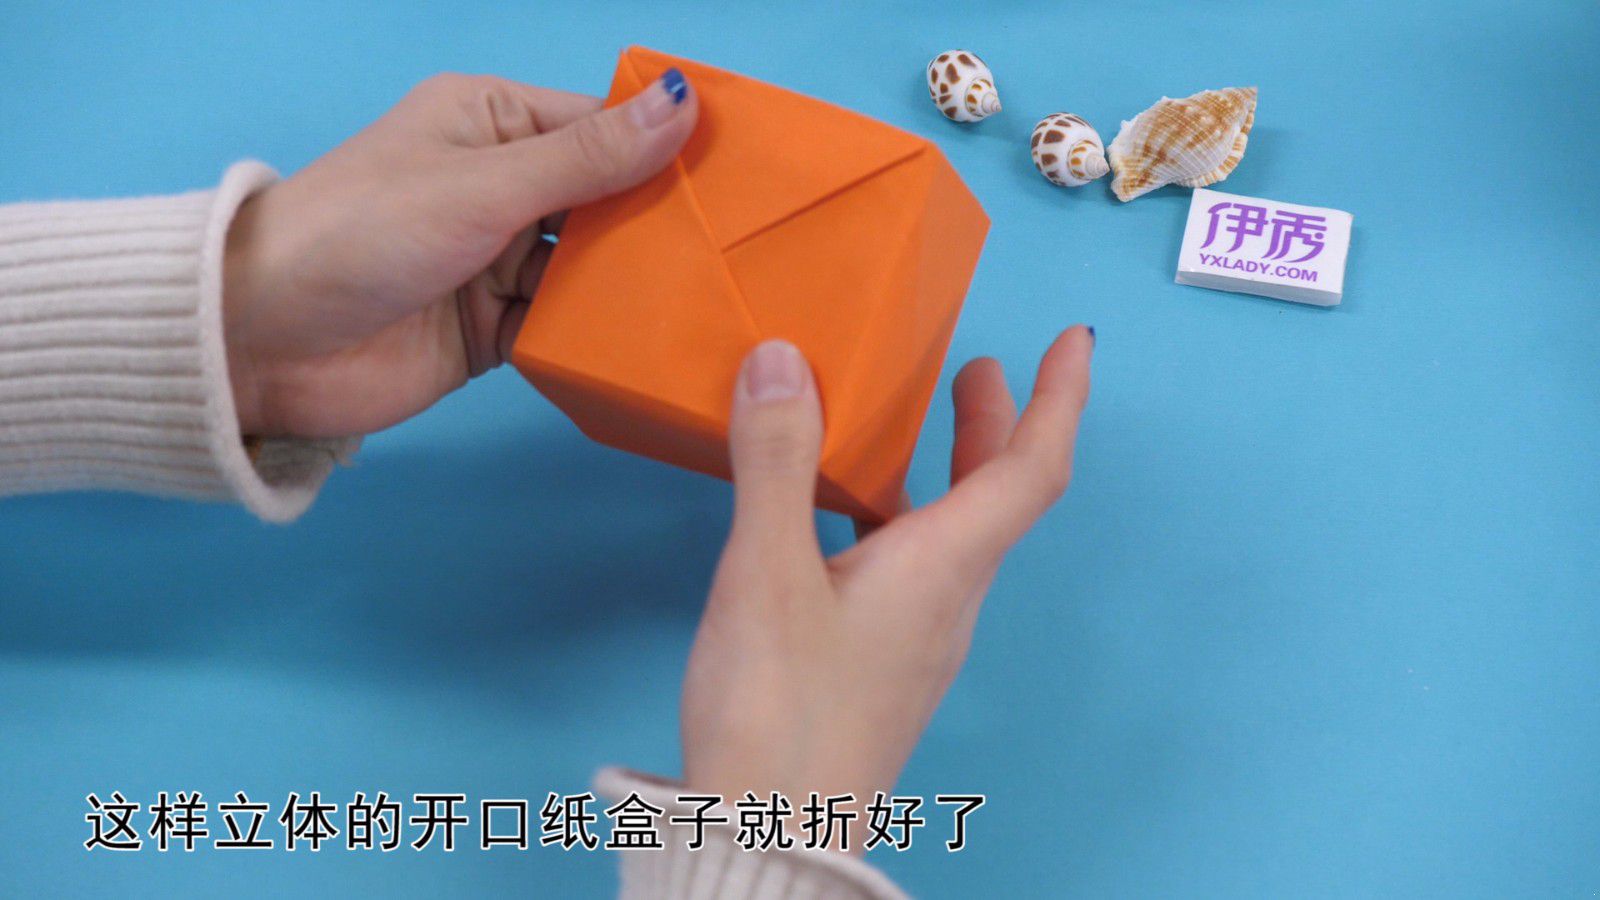 纸盒子的折法在这!简易的手工折纸学起来!